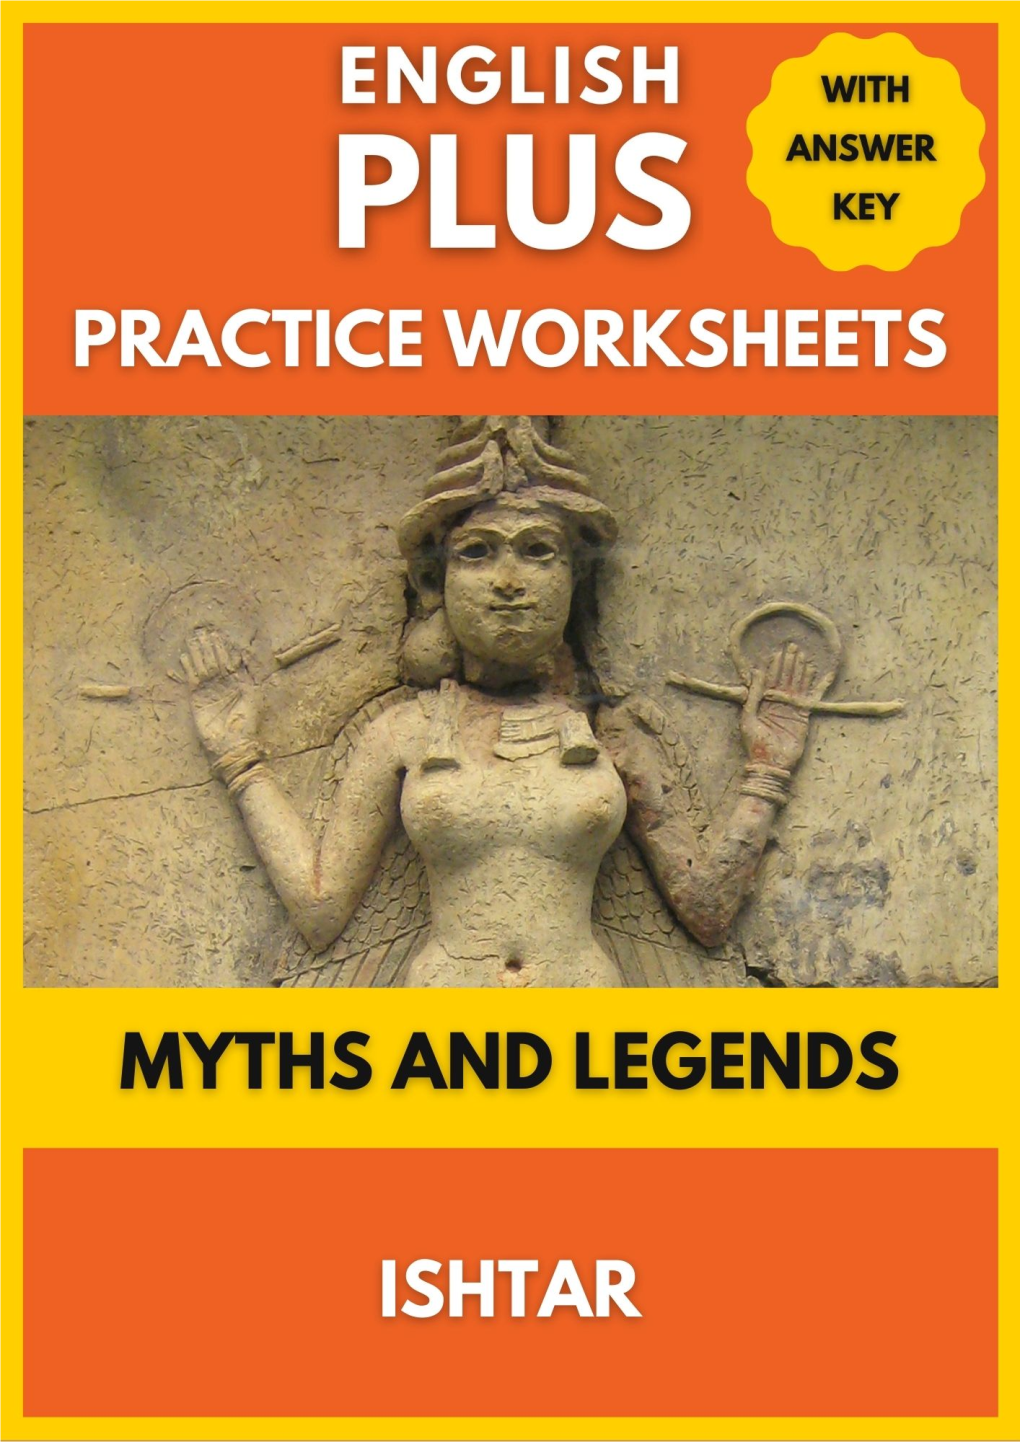 Episode 294 Myths and Legends Ishtar